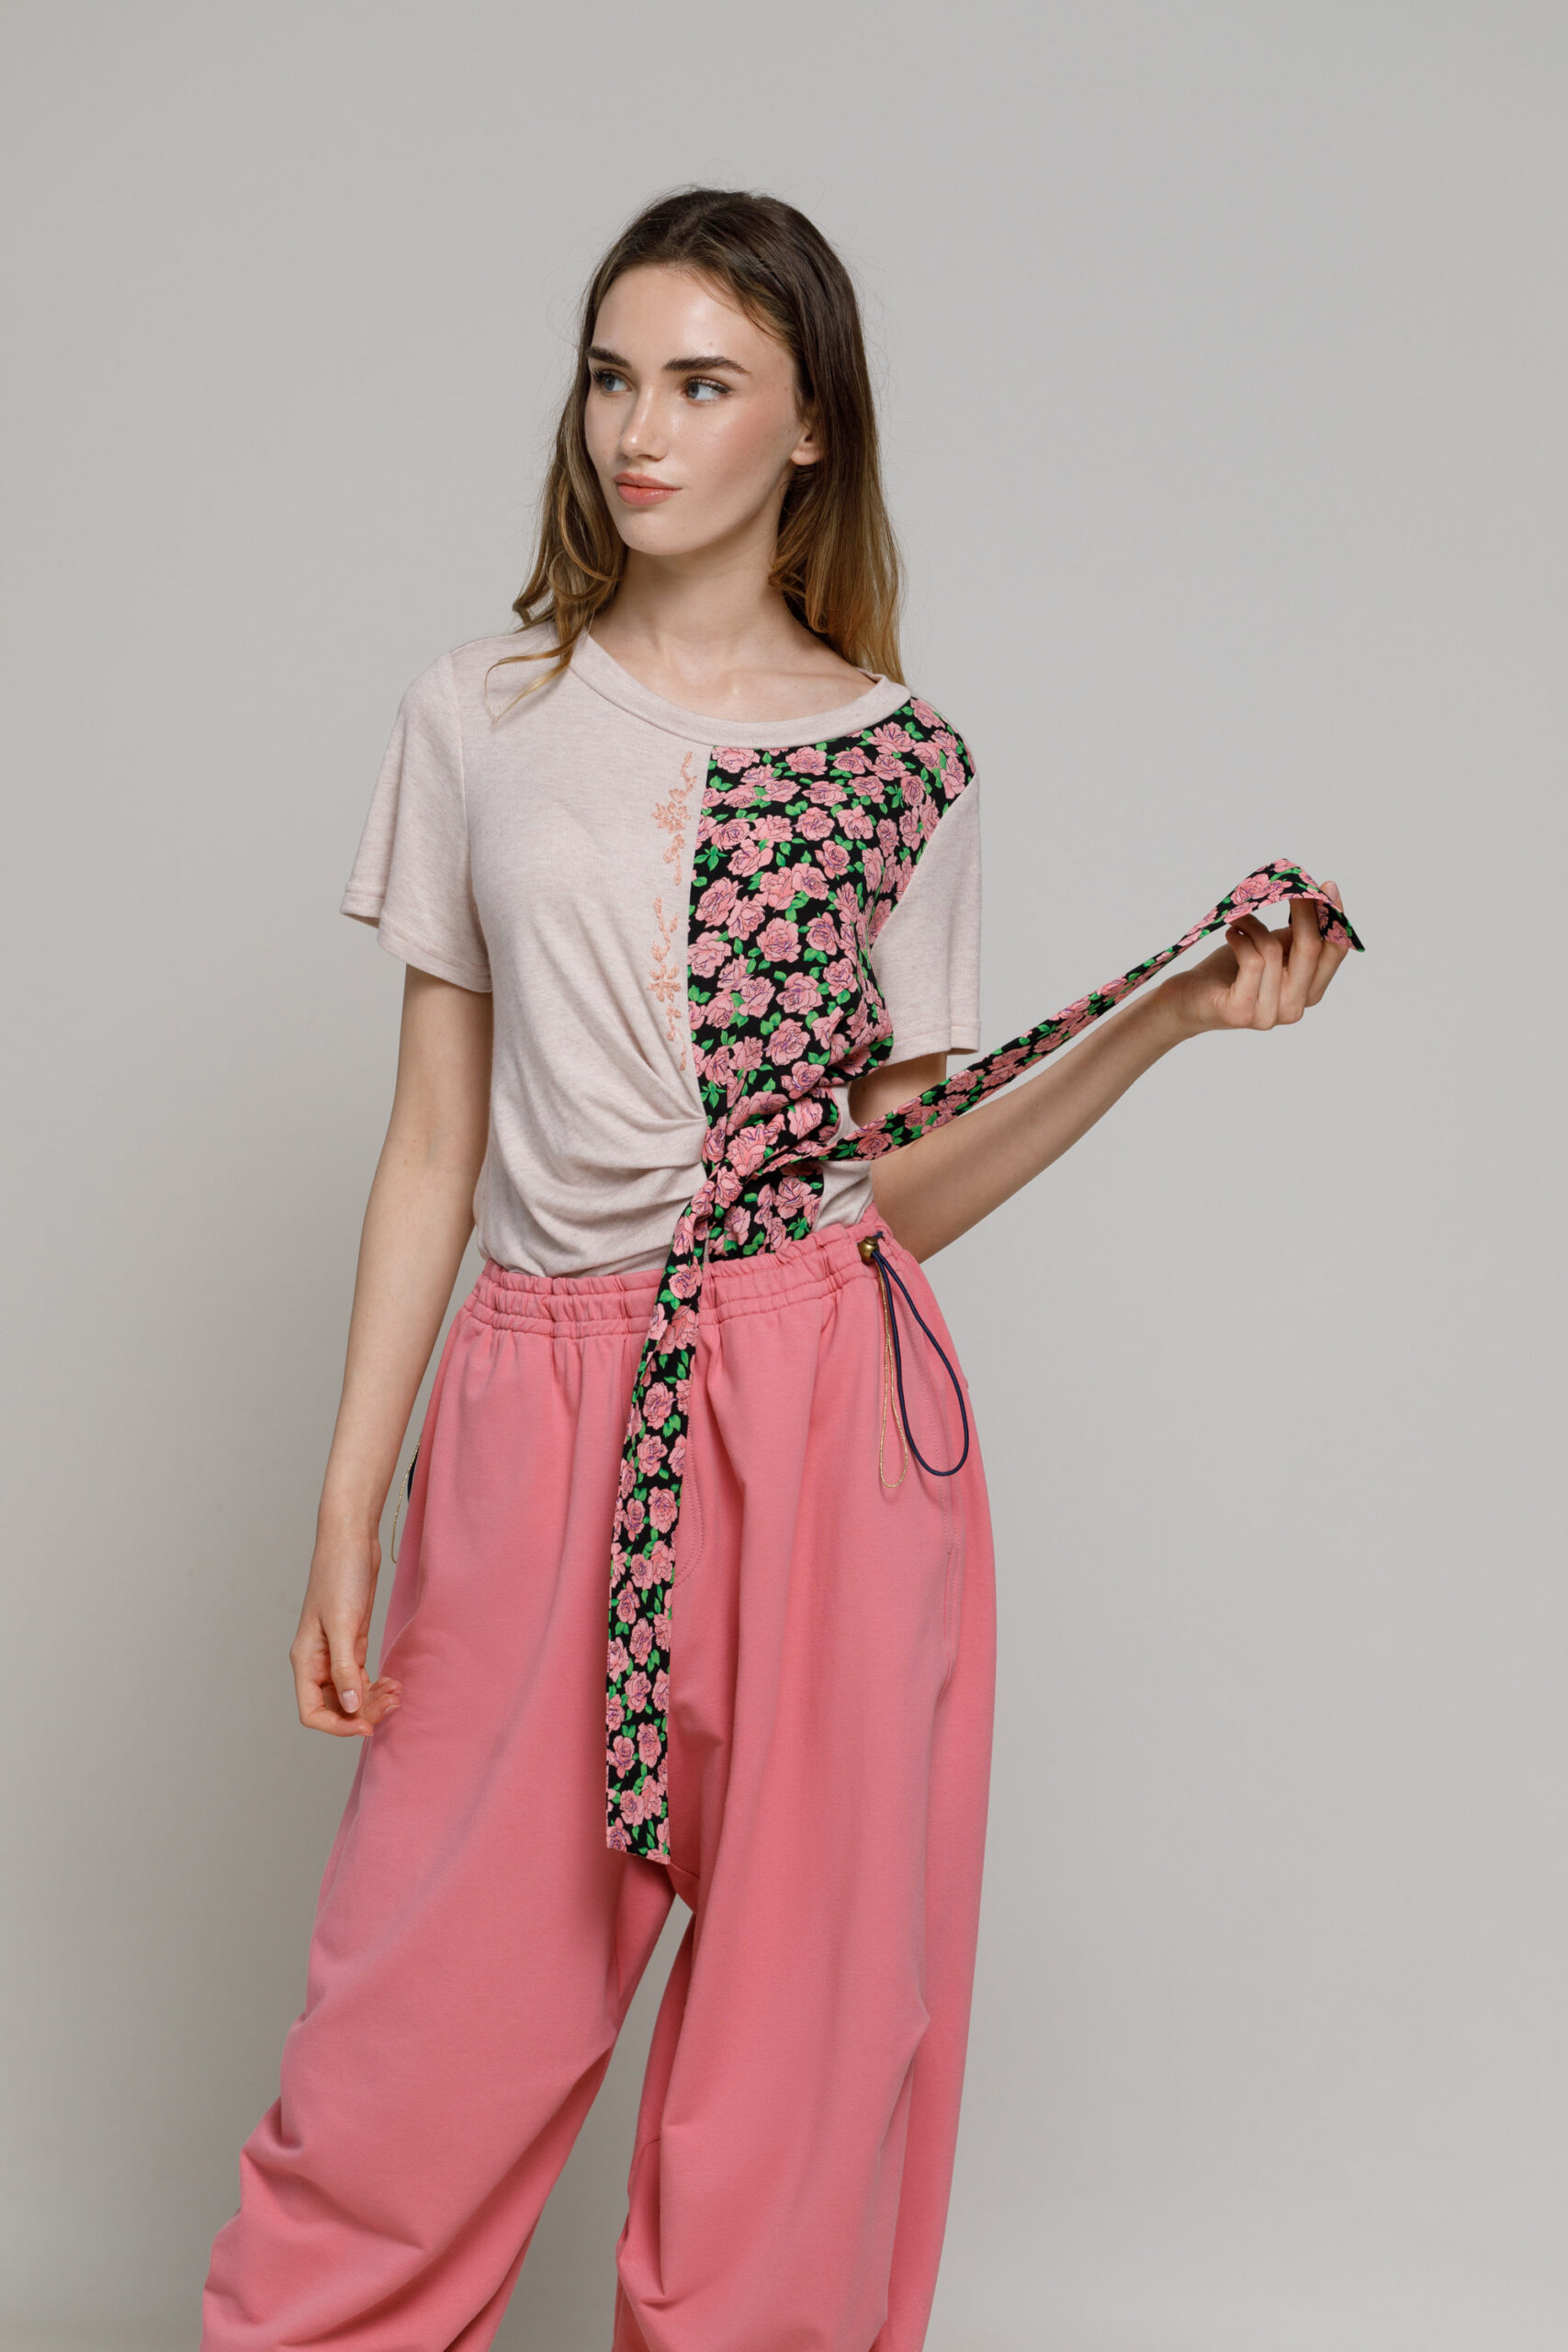 Bluza PAX  roz cu cordon. Materiale naturale, design unicat, cu broderie si aplicatii handmade